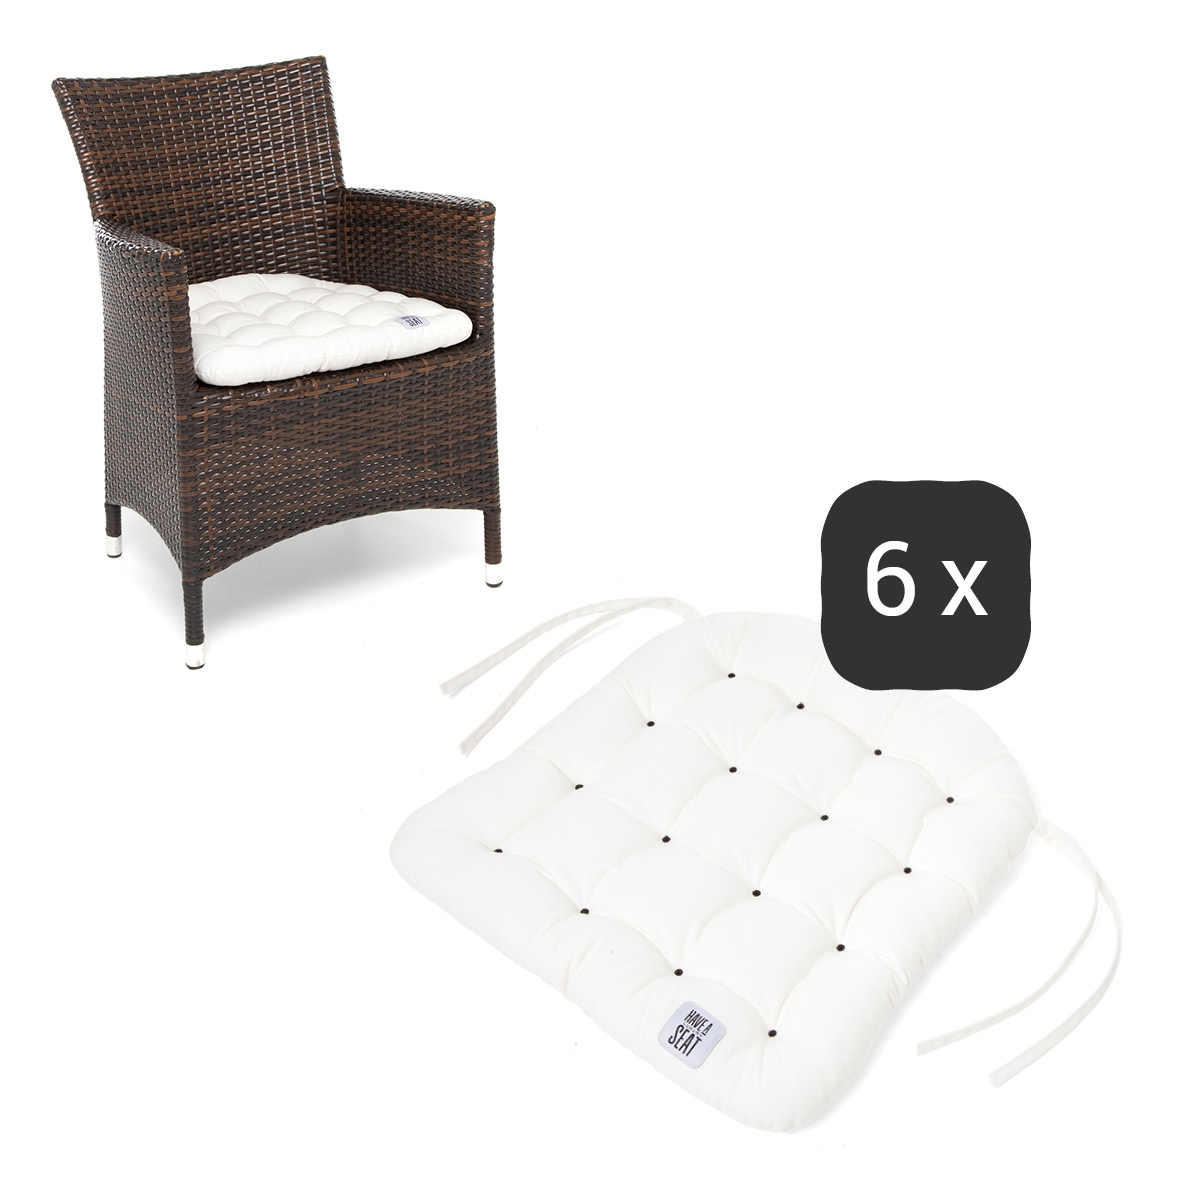 Sitzkissen für Rattanstühle 48x46 cm | Weiß | 6er Set | Premium-Sitzkomfort | Indoor / Outdoor | waschbar bis 95°C | HAVE A SEAT Living